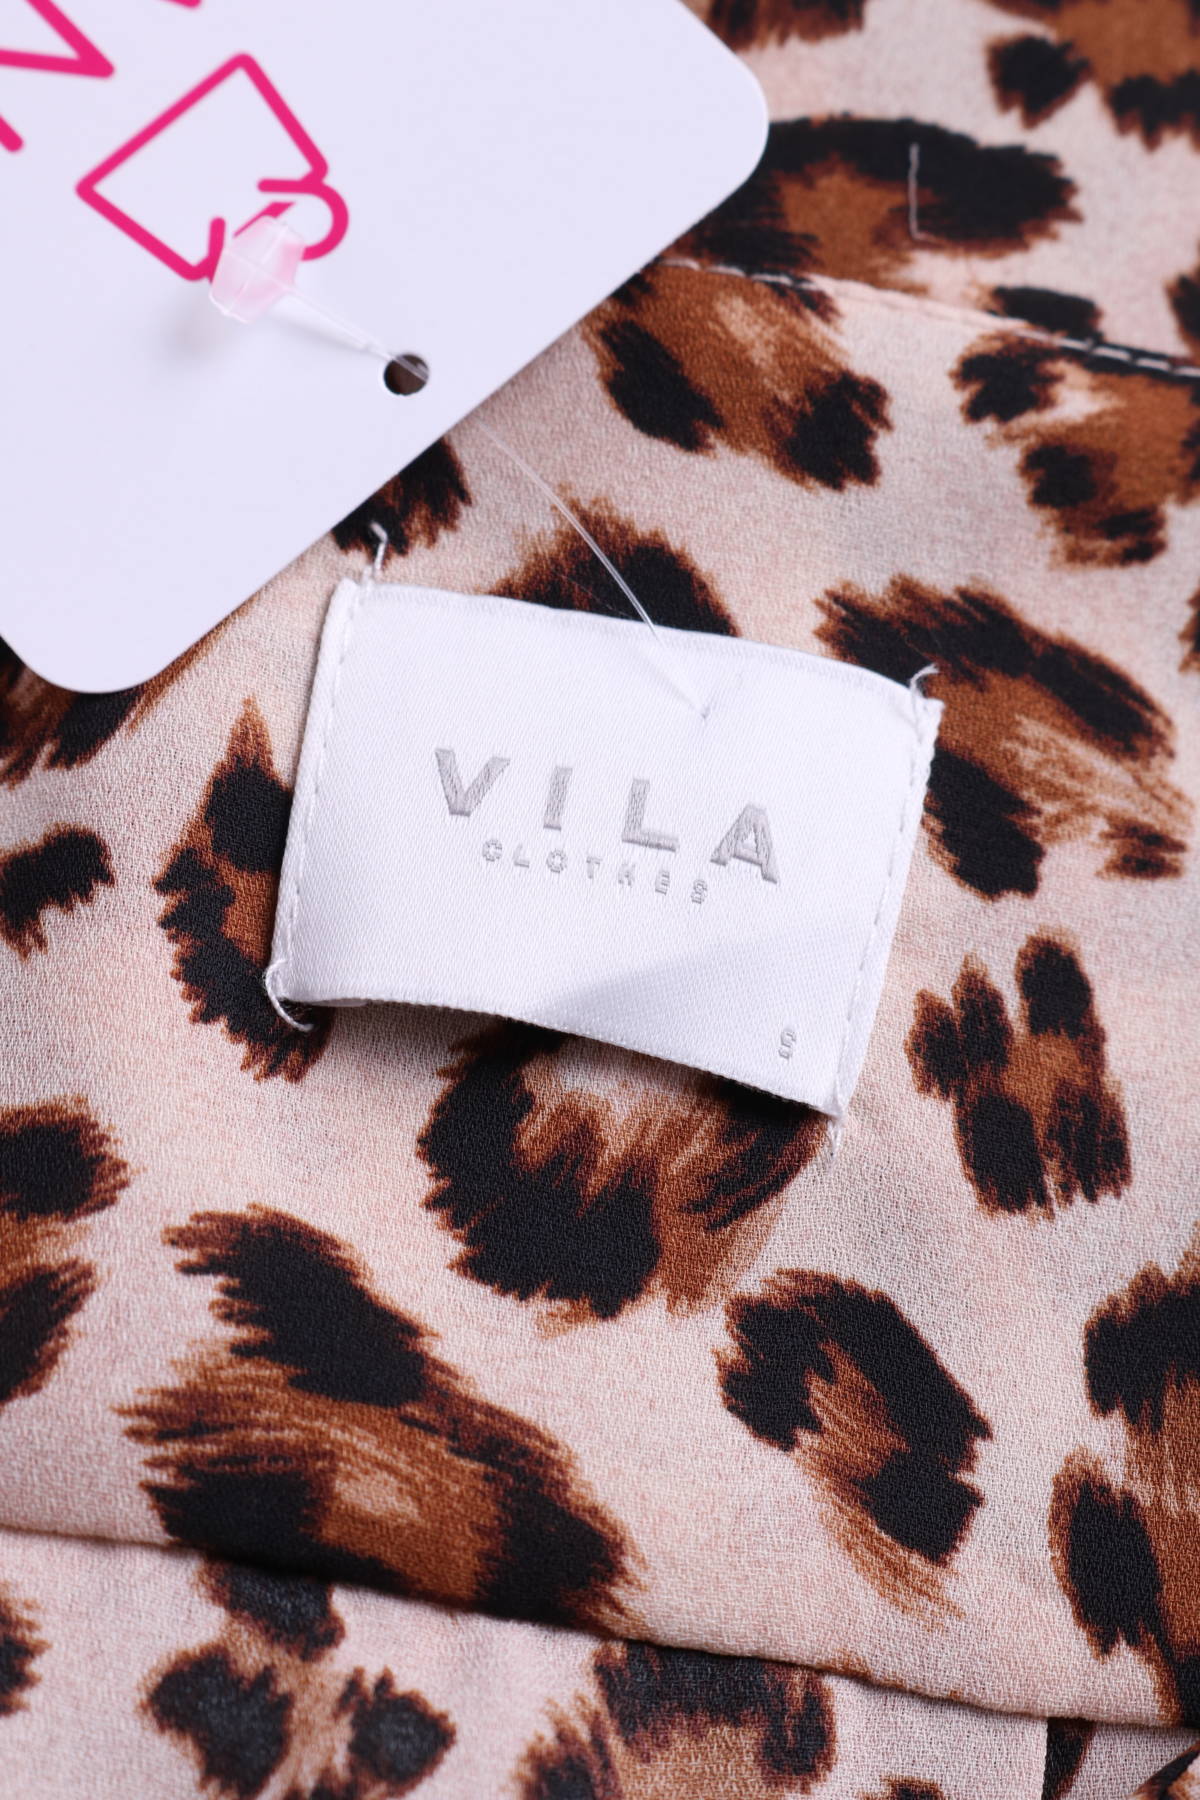 Риза VILA3